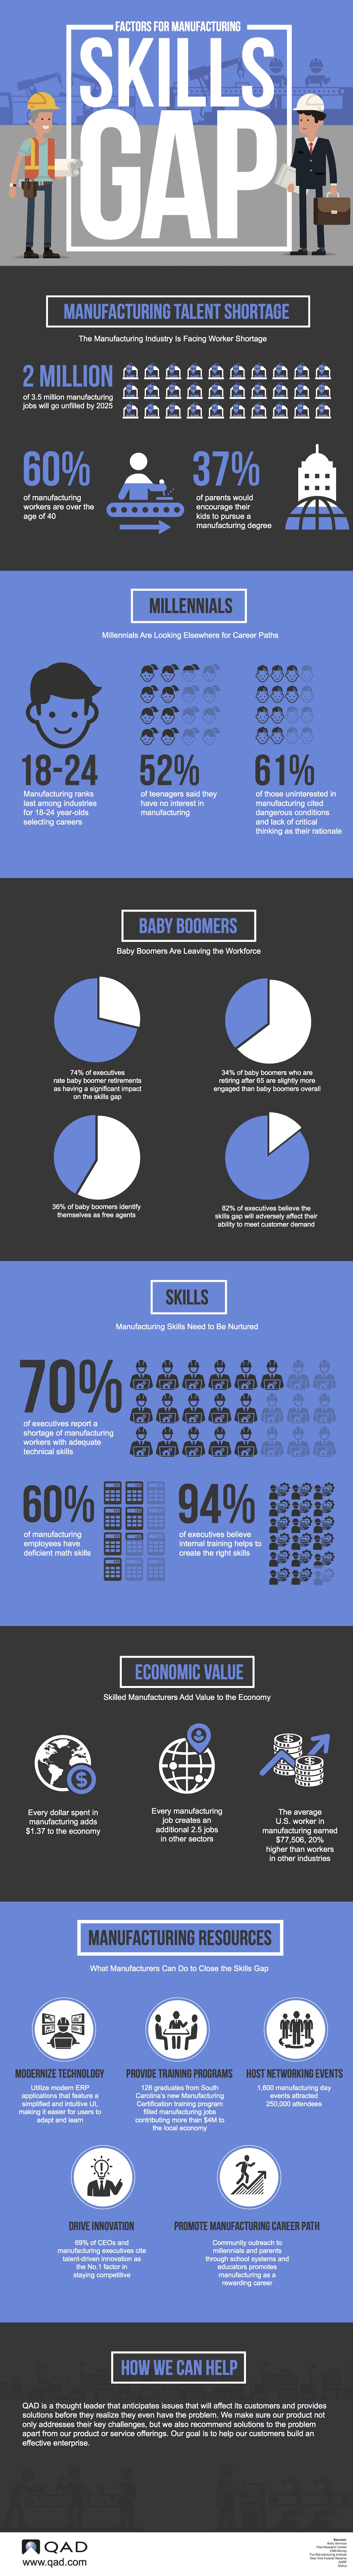 QAD-CiaB-Skills_Gap- Infographic1-IMG.jpg